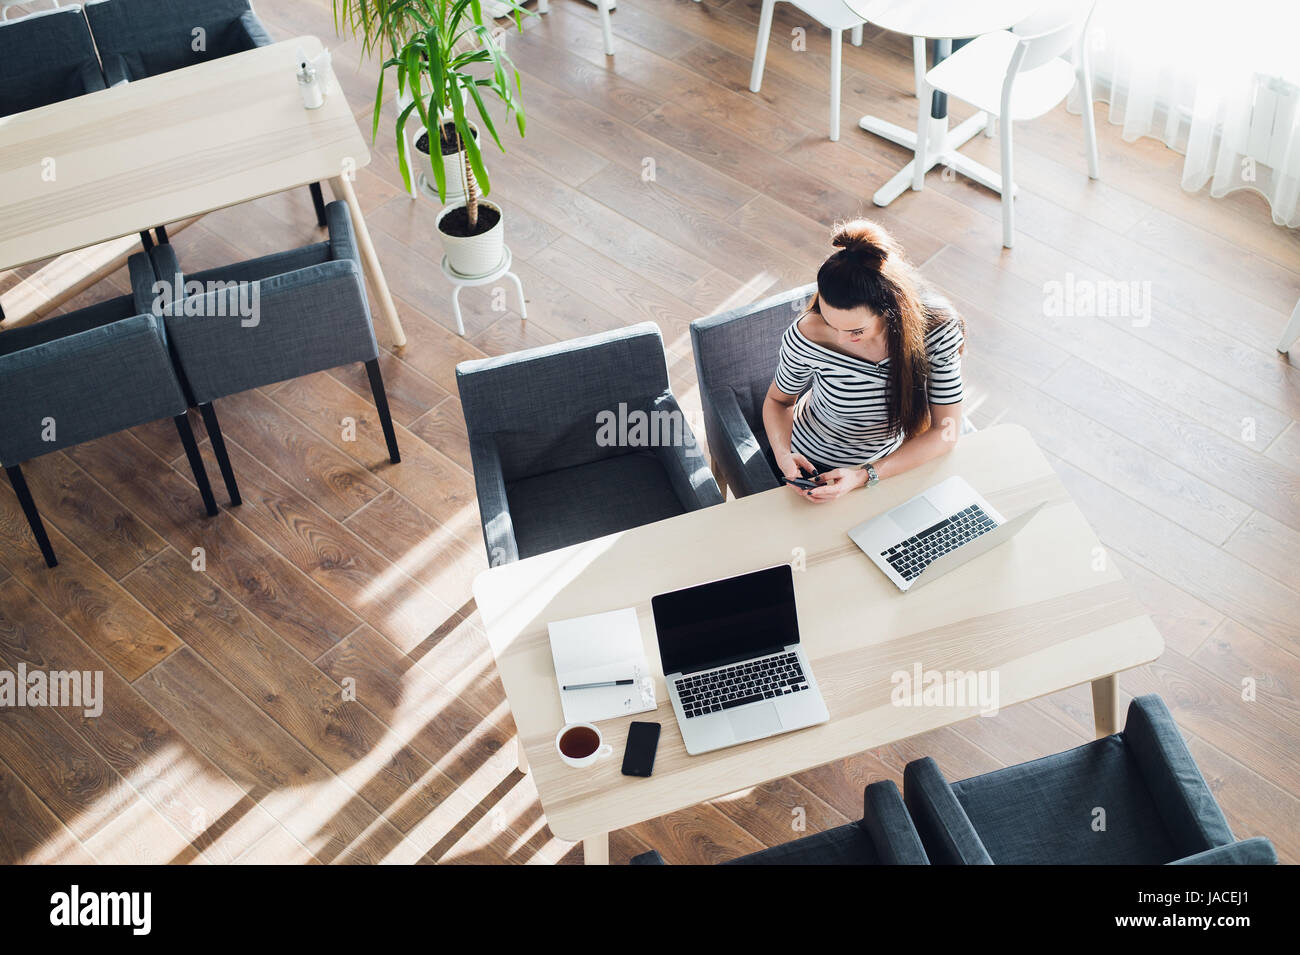 Vista superiore della femmina usando il suo computer portatile a un cafe'. Tettuccio di colpo di giovane donna seduta al tavolo con una tazza di caffè e telefono cellulare navigando in rete sul suo computer portatile. Foto Stock